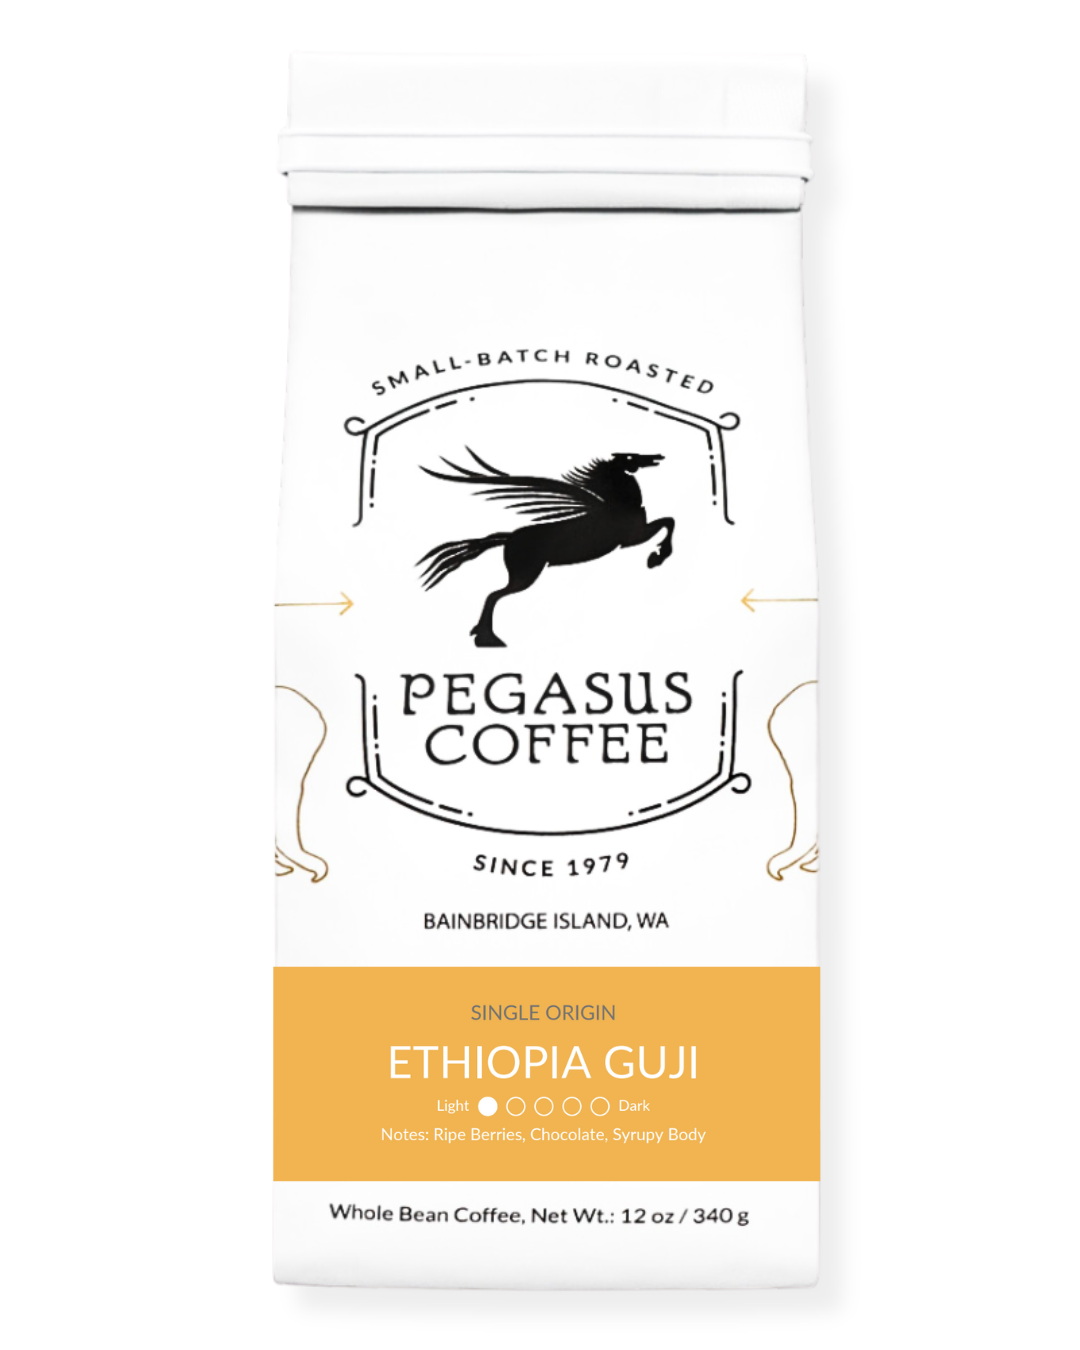 Ethiopia Guji Light Roast Coffee From Pegasus Coffee